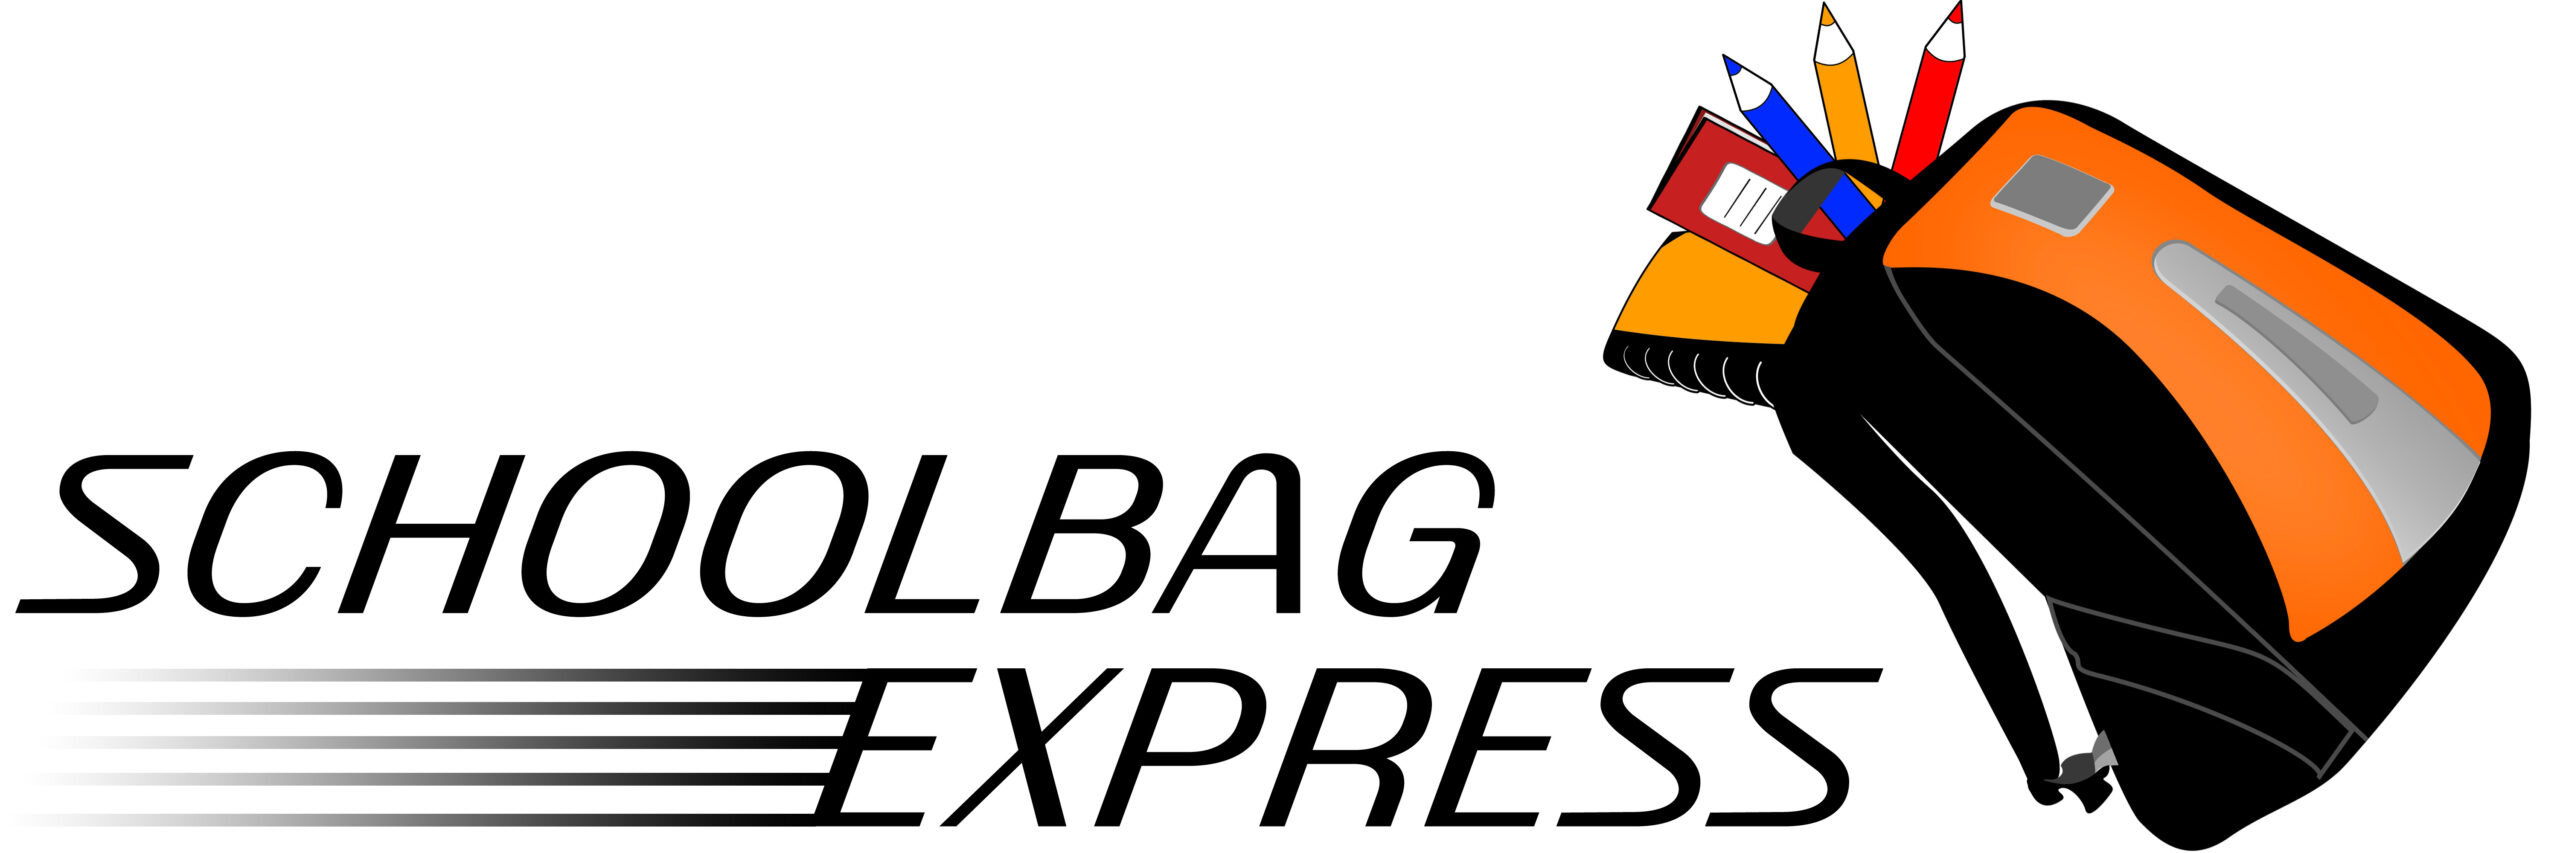 Stammartikel – Schoolbag Express